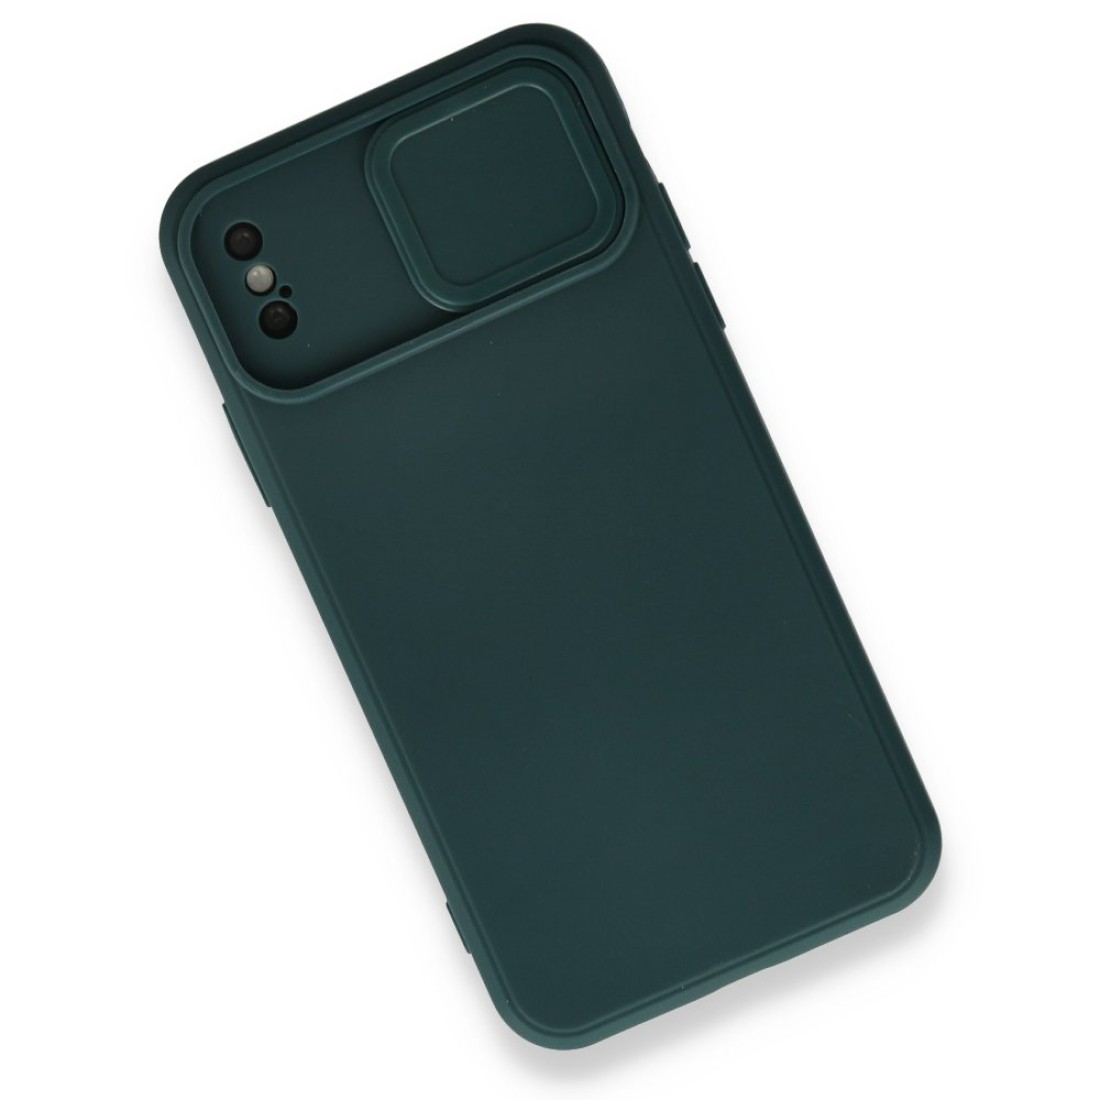 Apple iPhone X Kılıf Color Lens Silikon - Yeşil